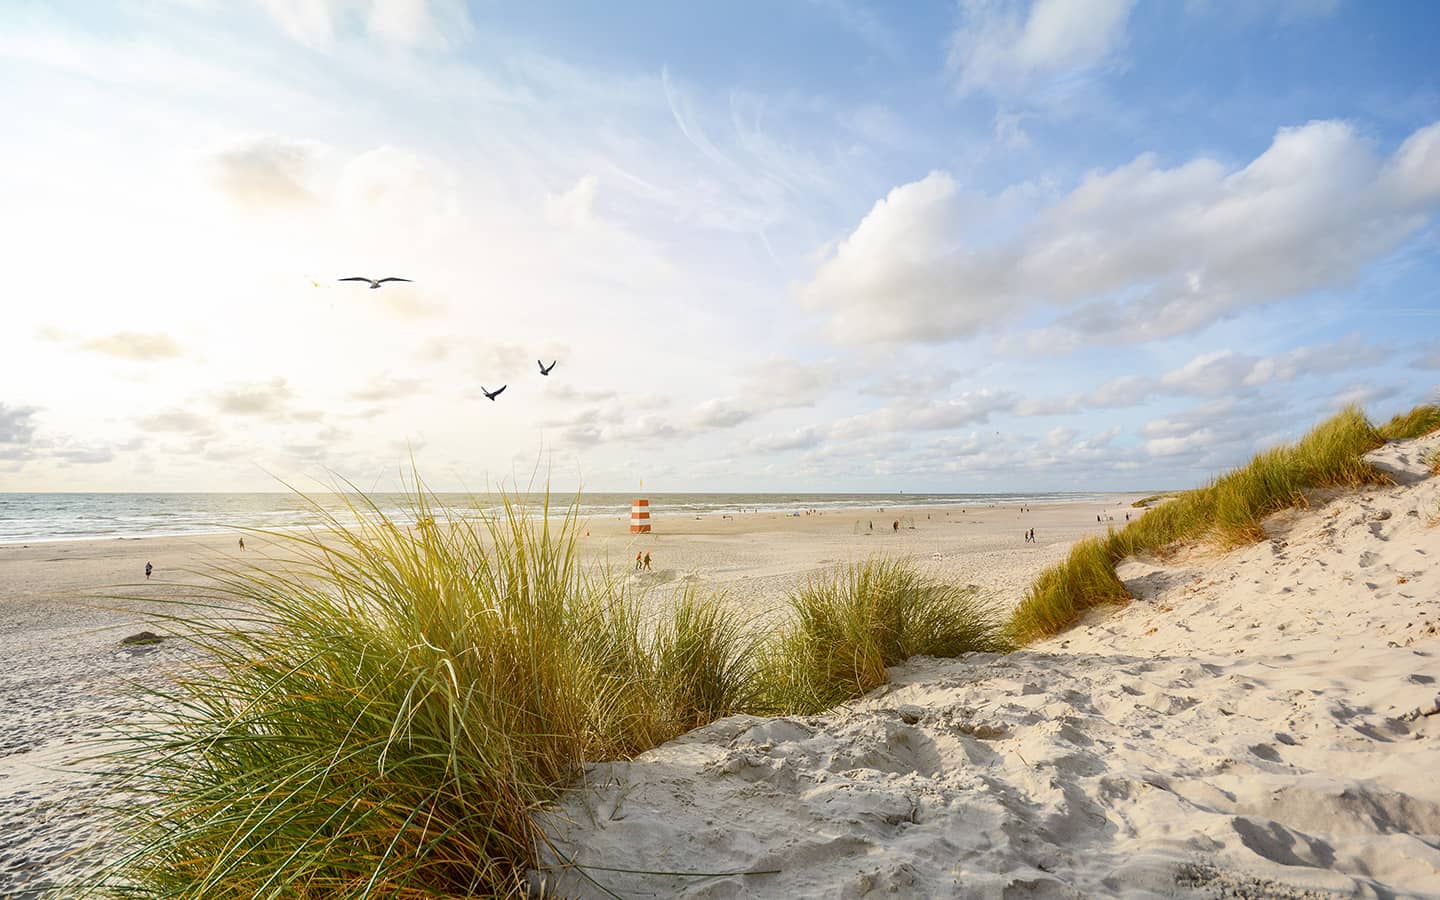 Aussicht auf schöne Landschaft mit Strand- und Sanddünen in der Nähe von Henne Strand, Nordseeküstenlandschaft, Jütland Dänemark